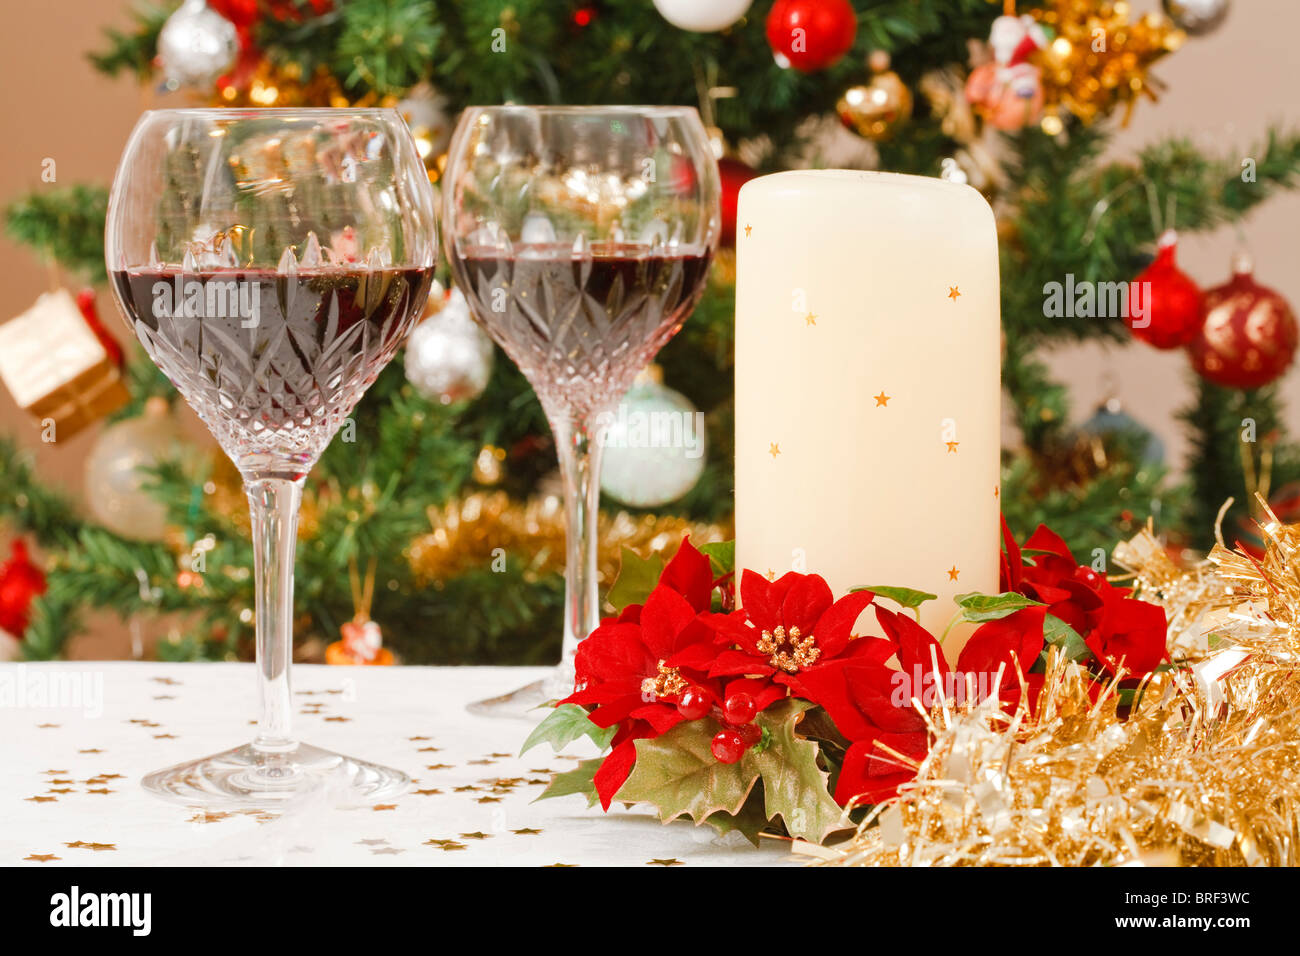 Escena con árbol de Navidad comedor de cristal, copas de vino y decoración de la mesa navideña Foto de stock